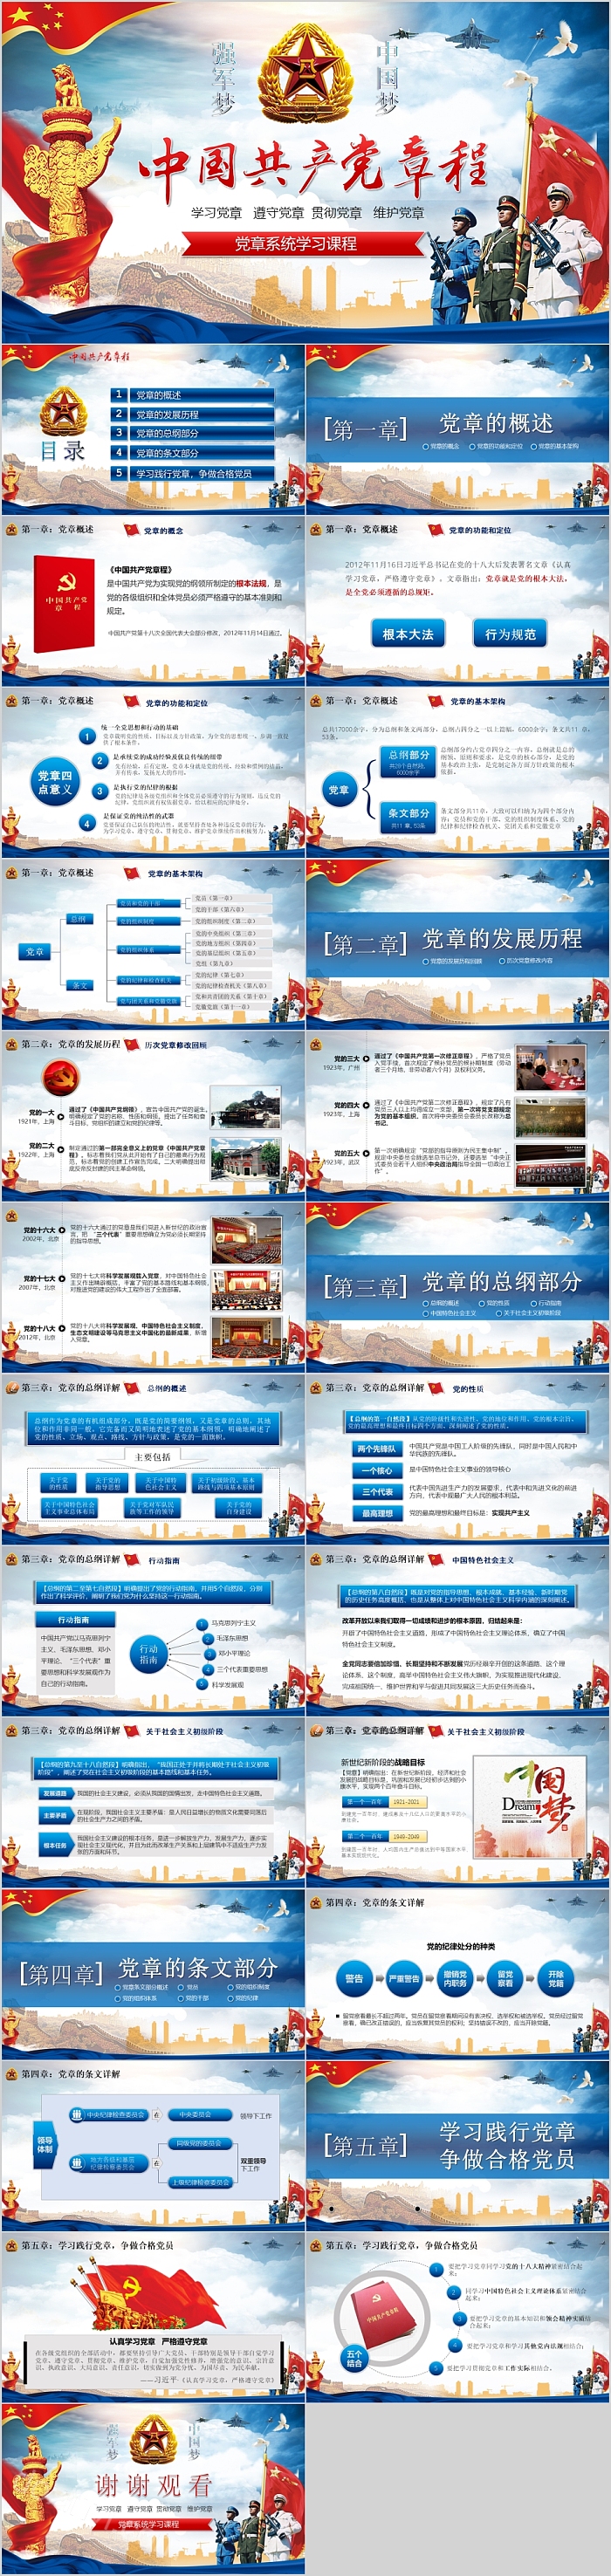 中国共产党章程系统学习课程